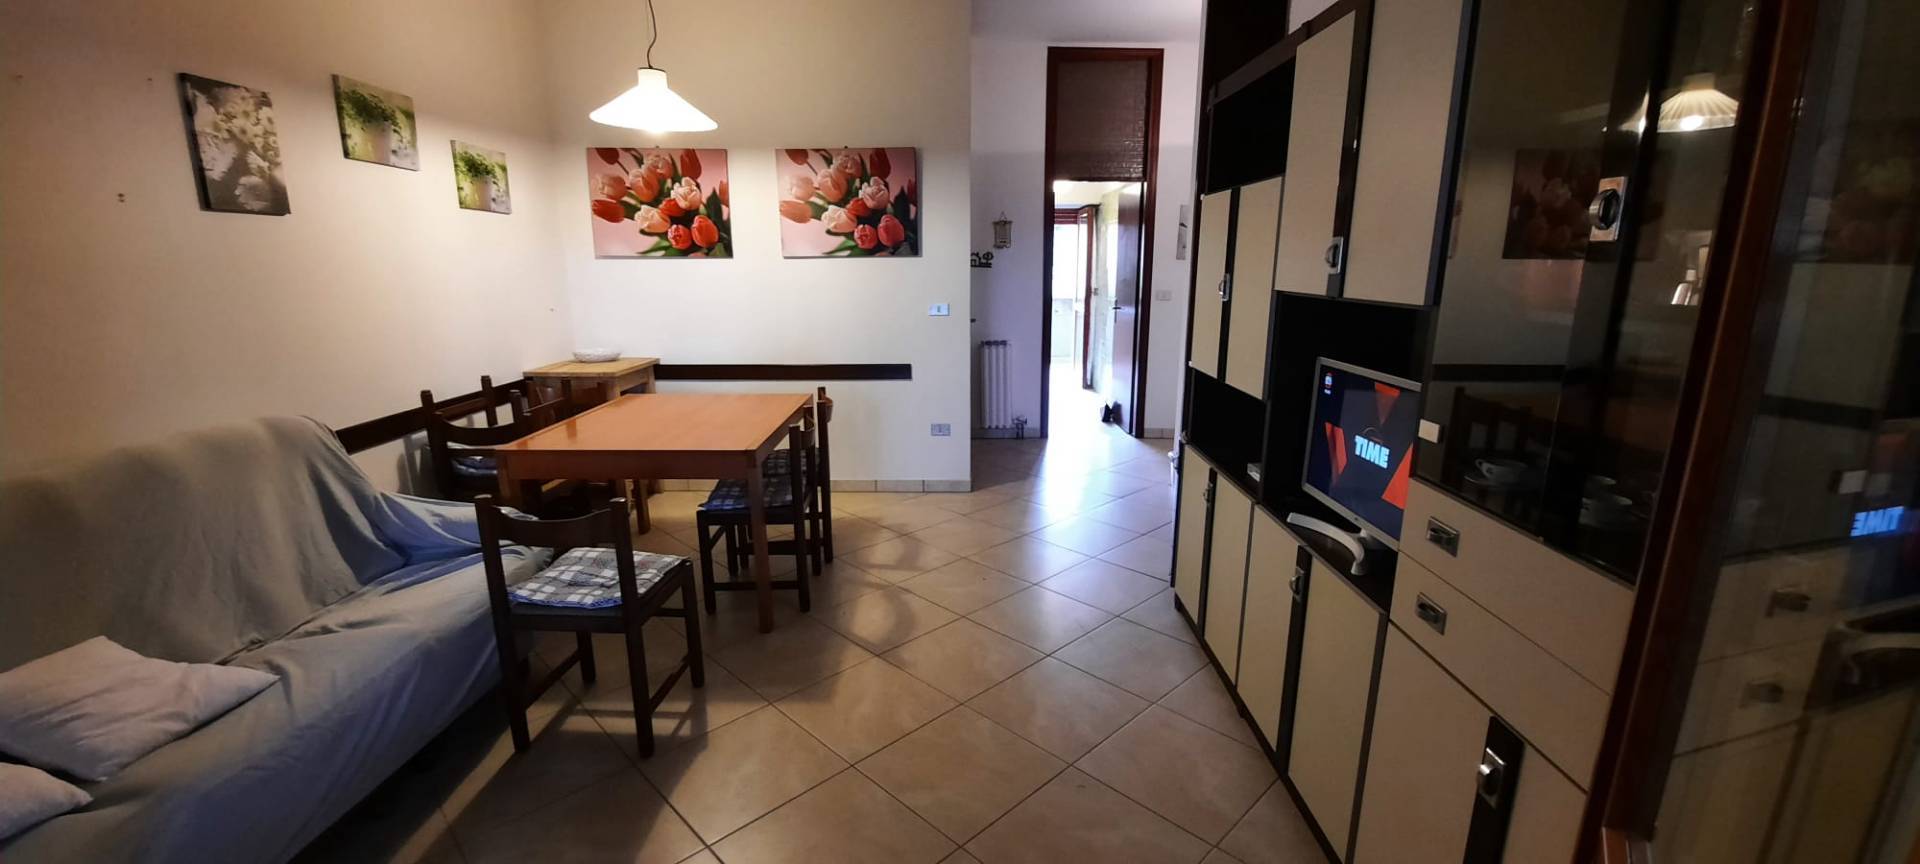 Appartamento in affitto a Ravenna, 4 locali, zona Località: LidodiClasse, prezzo € 3.000 | PortaleAgenzieImmobiliari.it